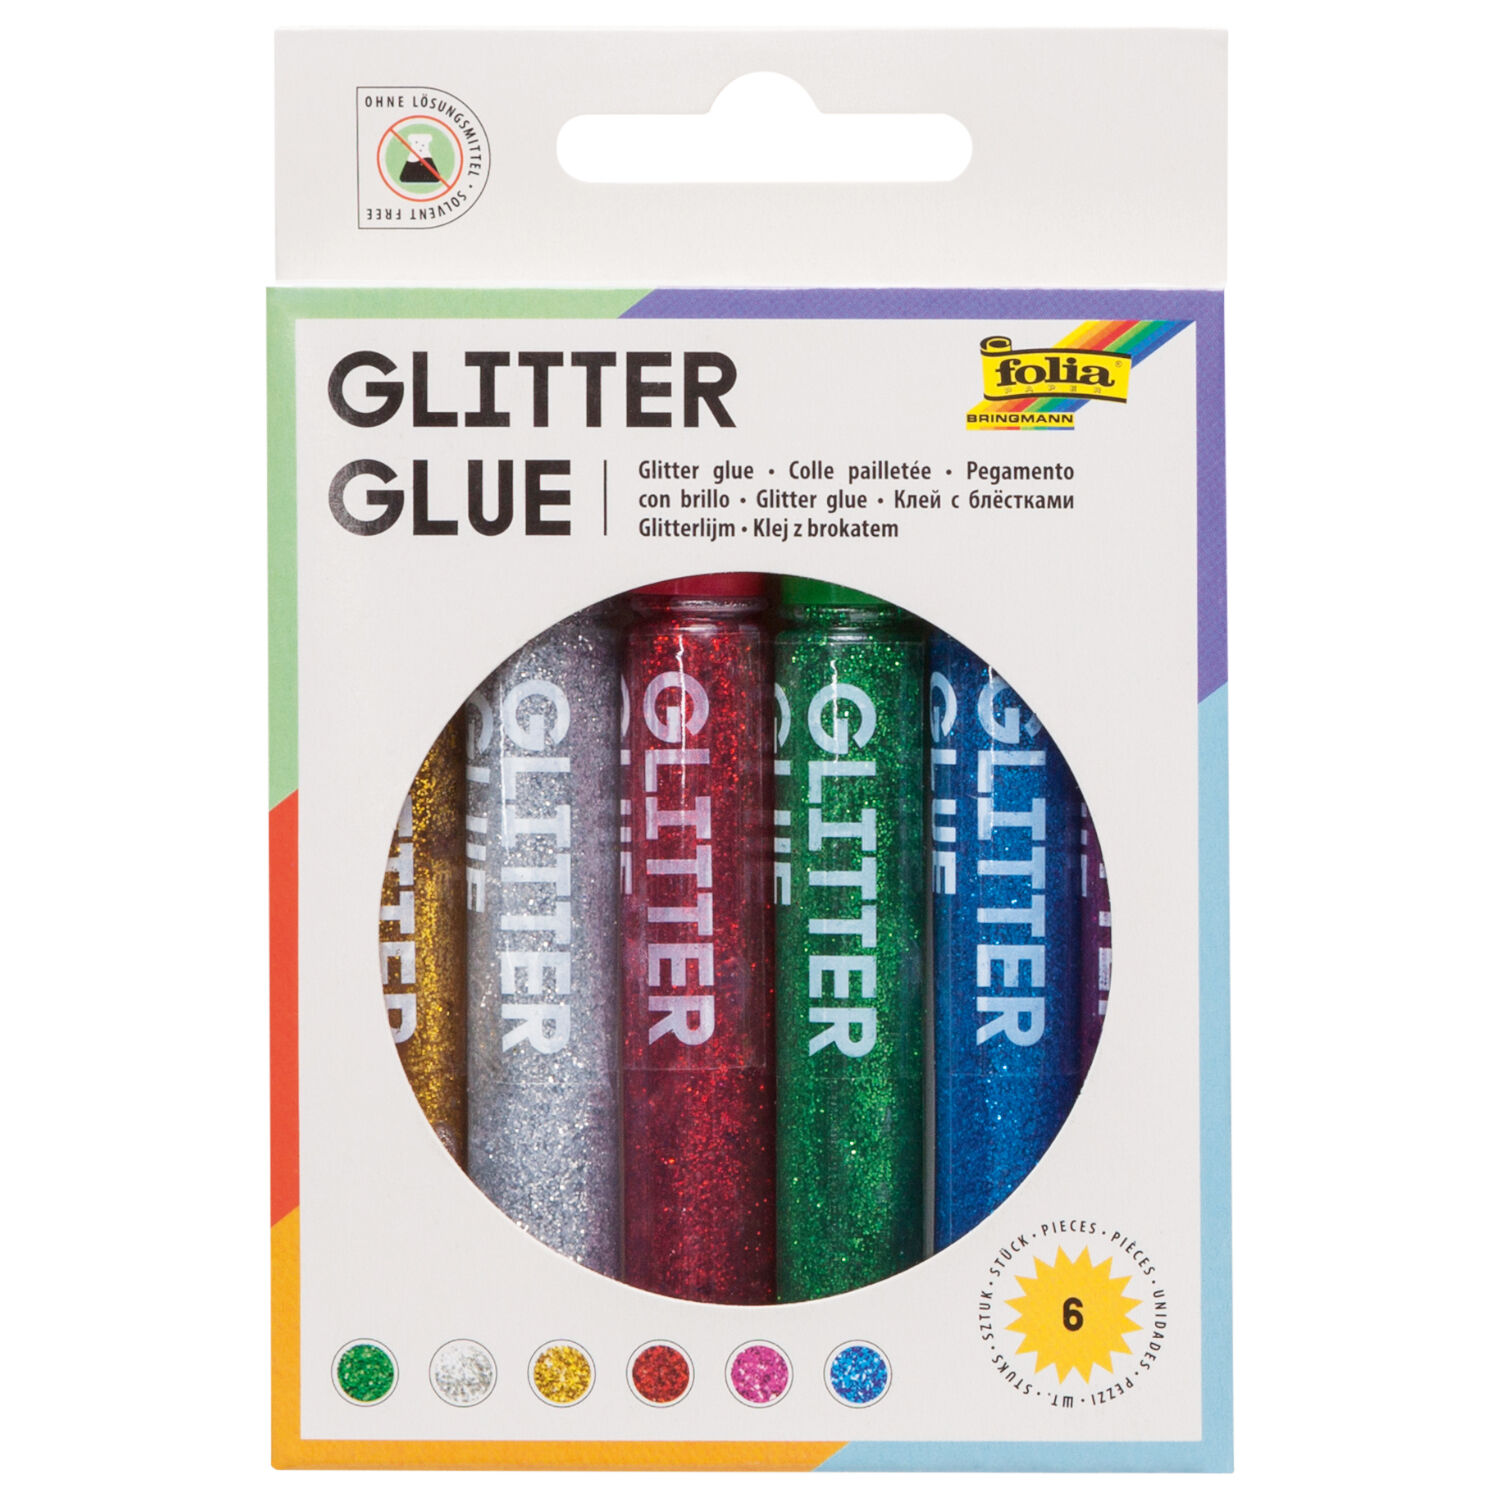 Glitter Glue 6er, 6 Klebestifte mit je 9,5ml Inhalt